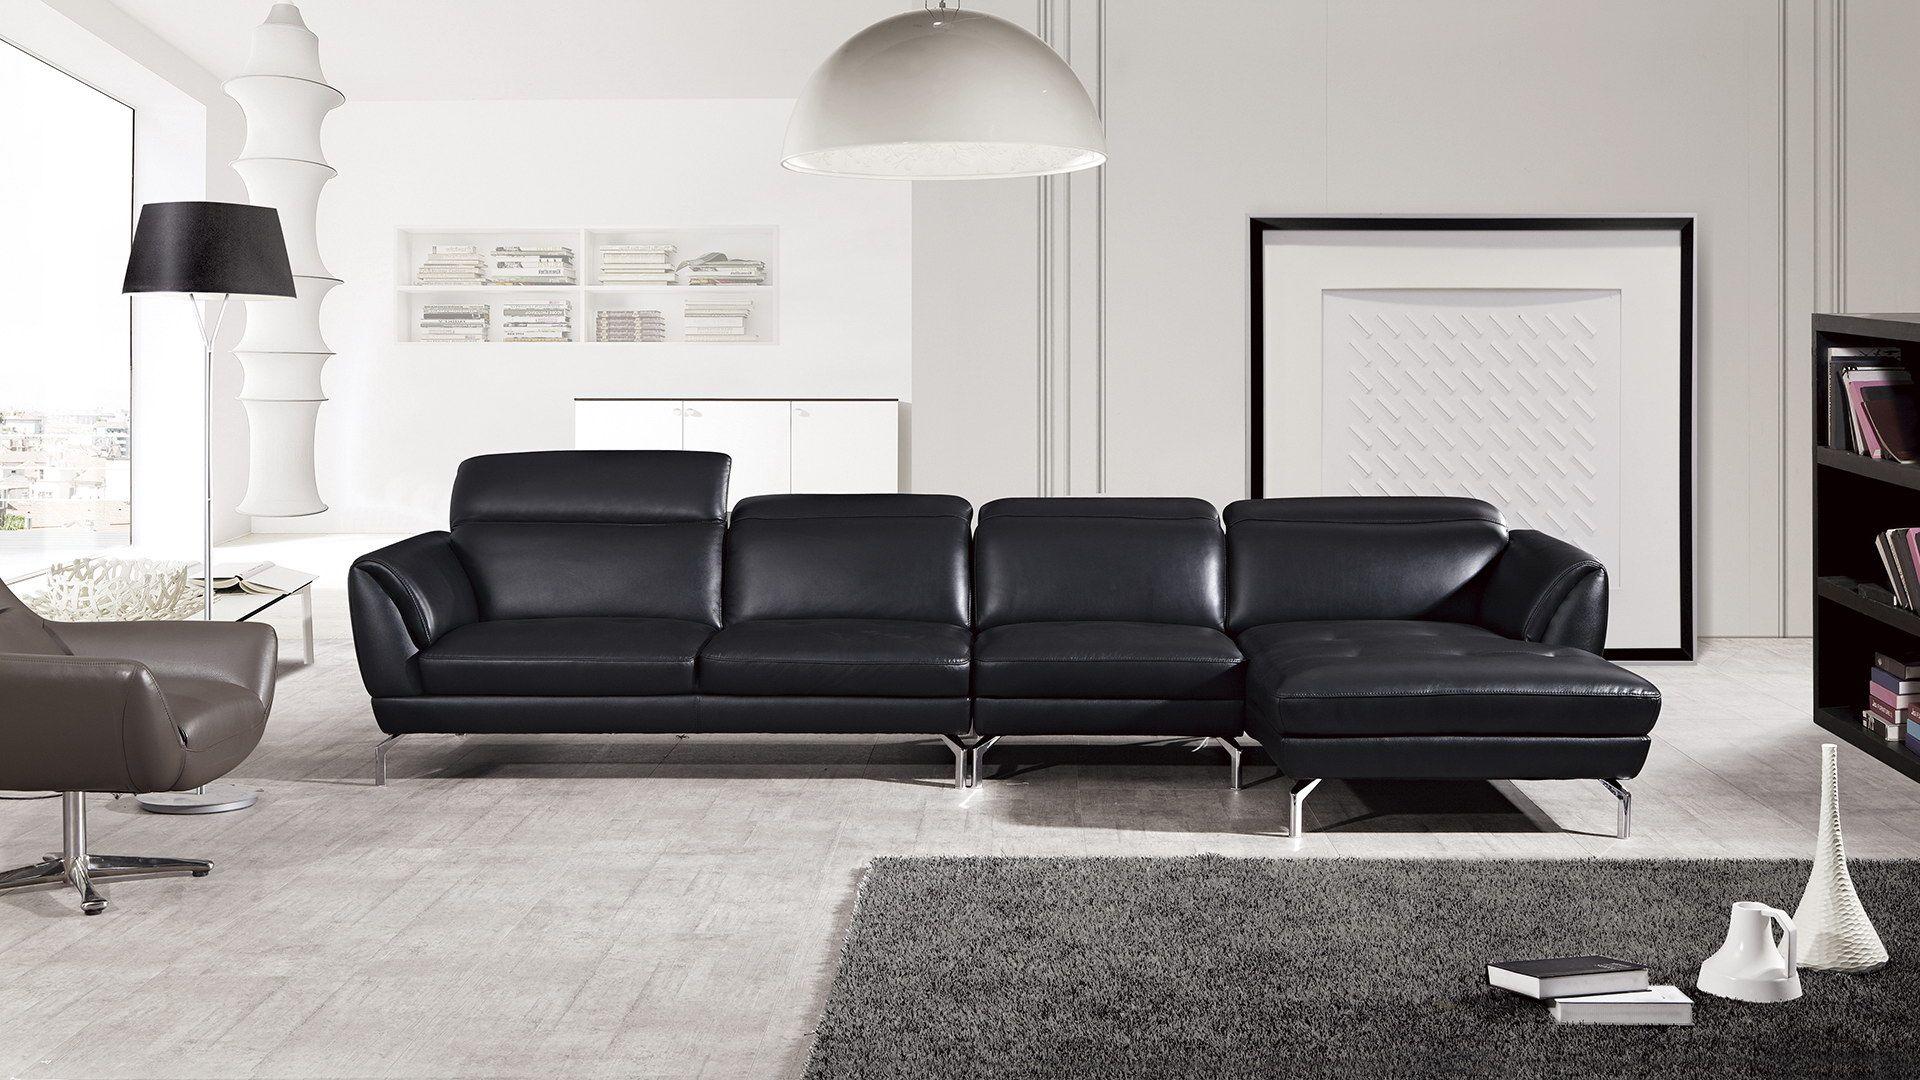 Contemporary, Modern Sectional Sofa EK-L023-BK EK-L023R-BK in Black Italian Leather